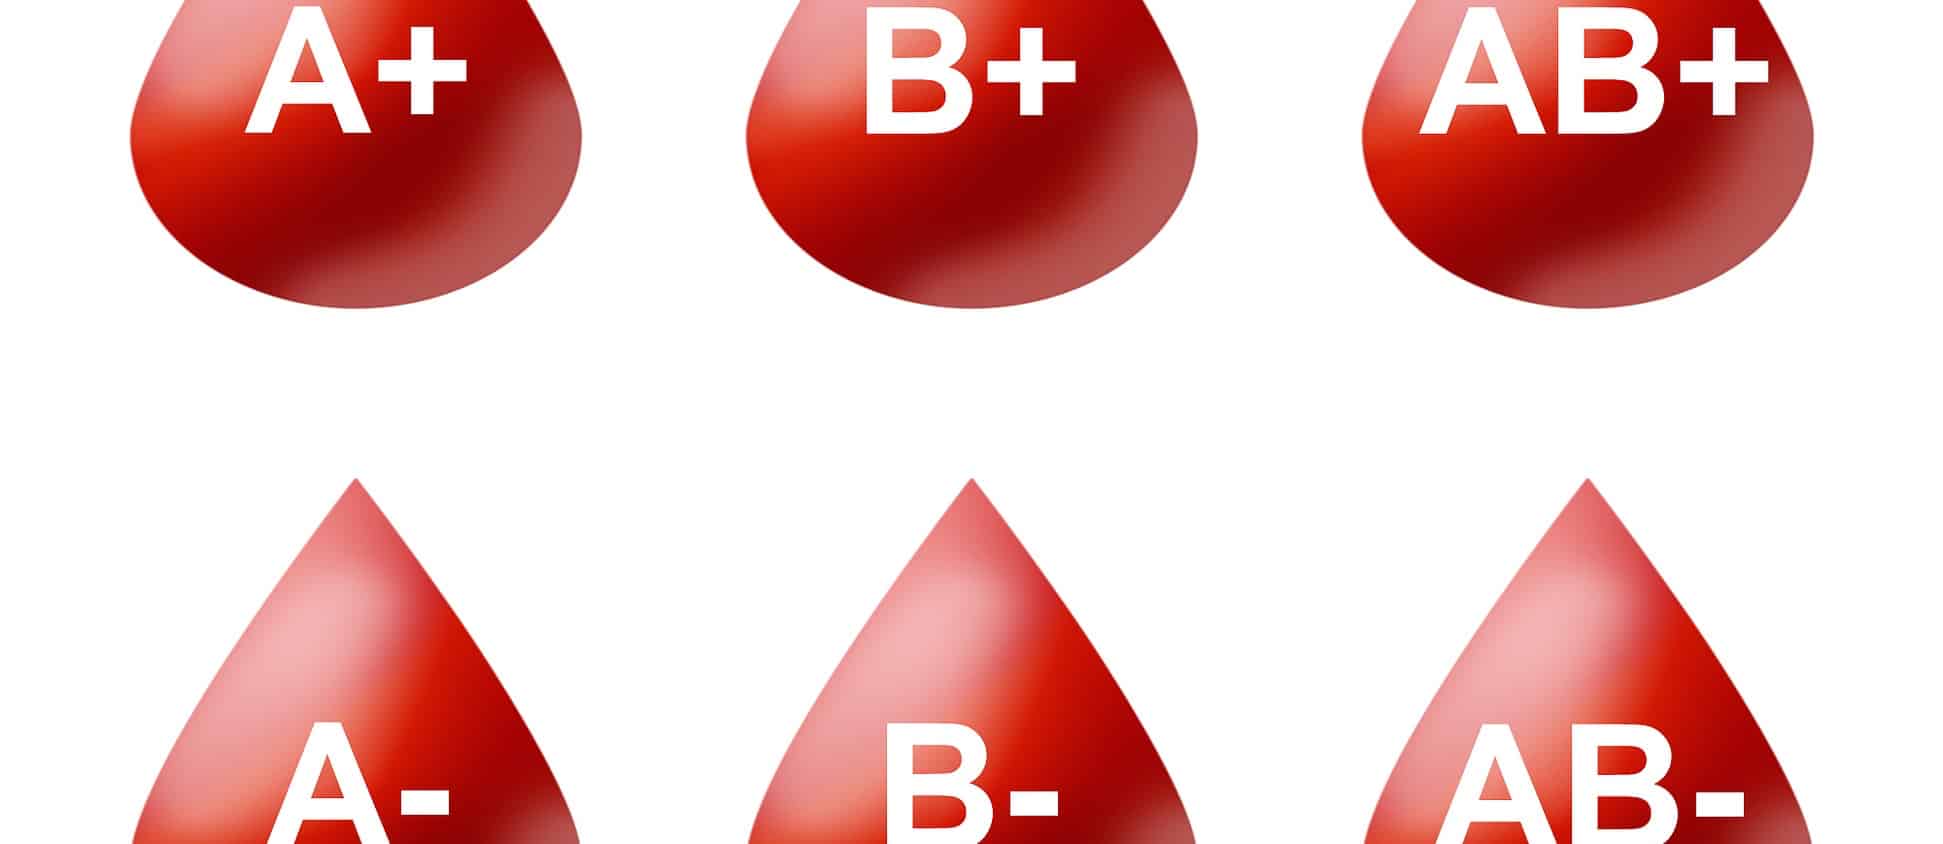 Группа крови 2013. Группа крови. Первая группа крови. Gruppa krova. Вторая группа крови.